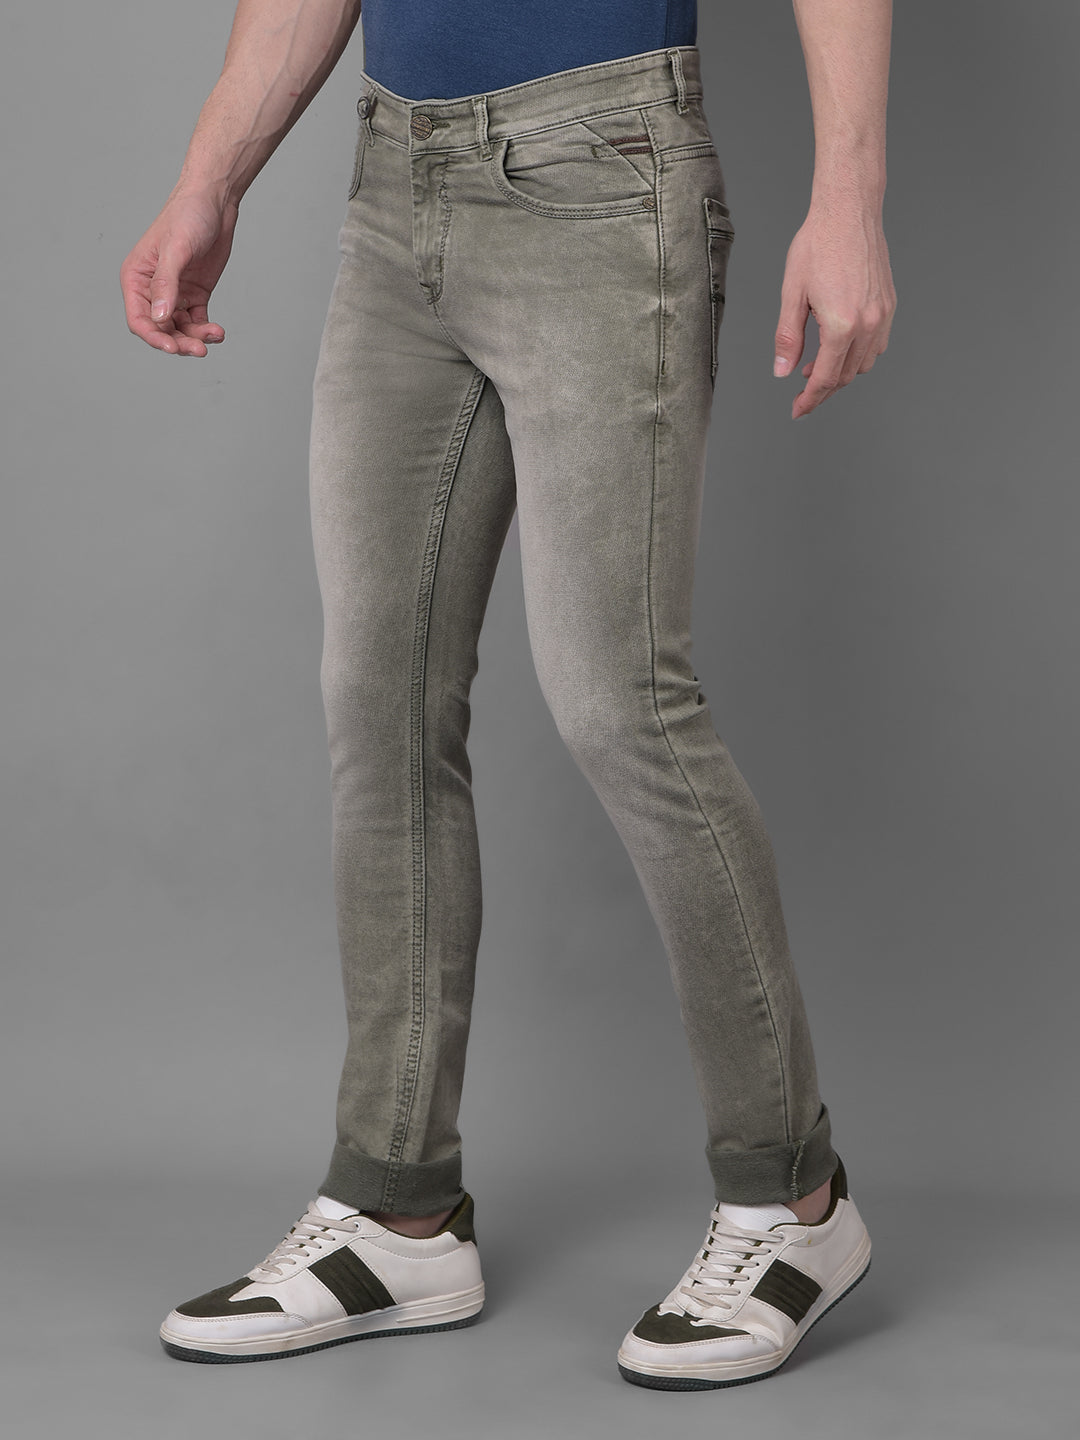 Olive Jeans-Men Jeans-Crimsoune Club